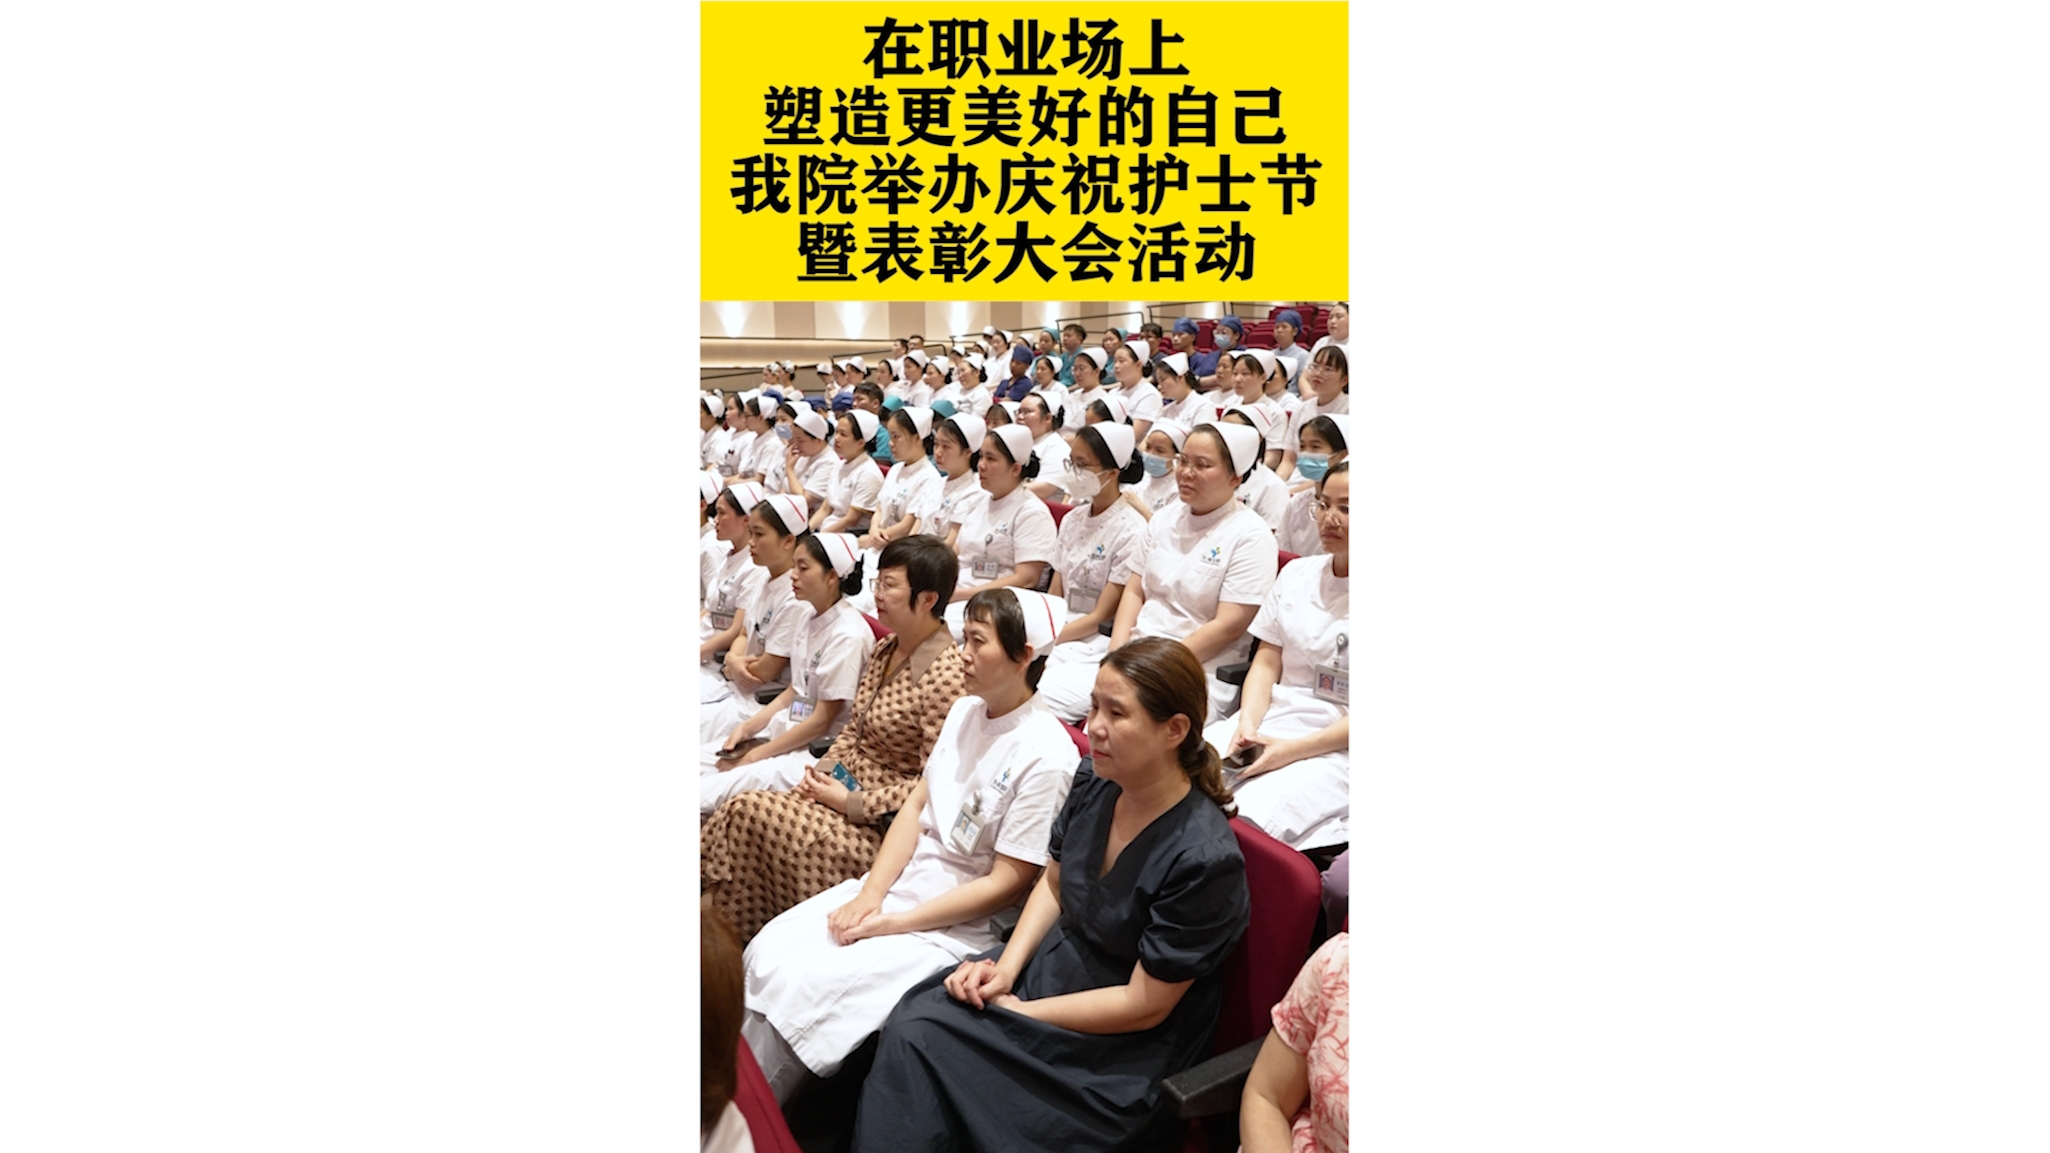 5.12在职业场上塑造更加美好的自己， 东晖医院护士总结表彰大会!